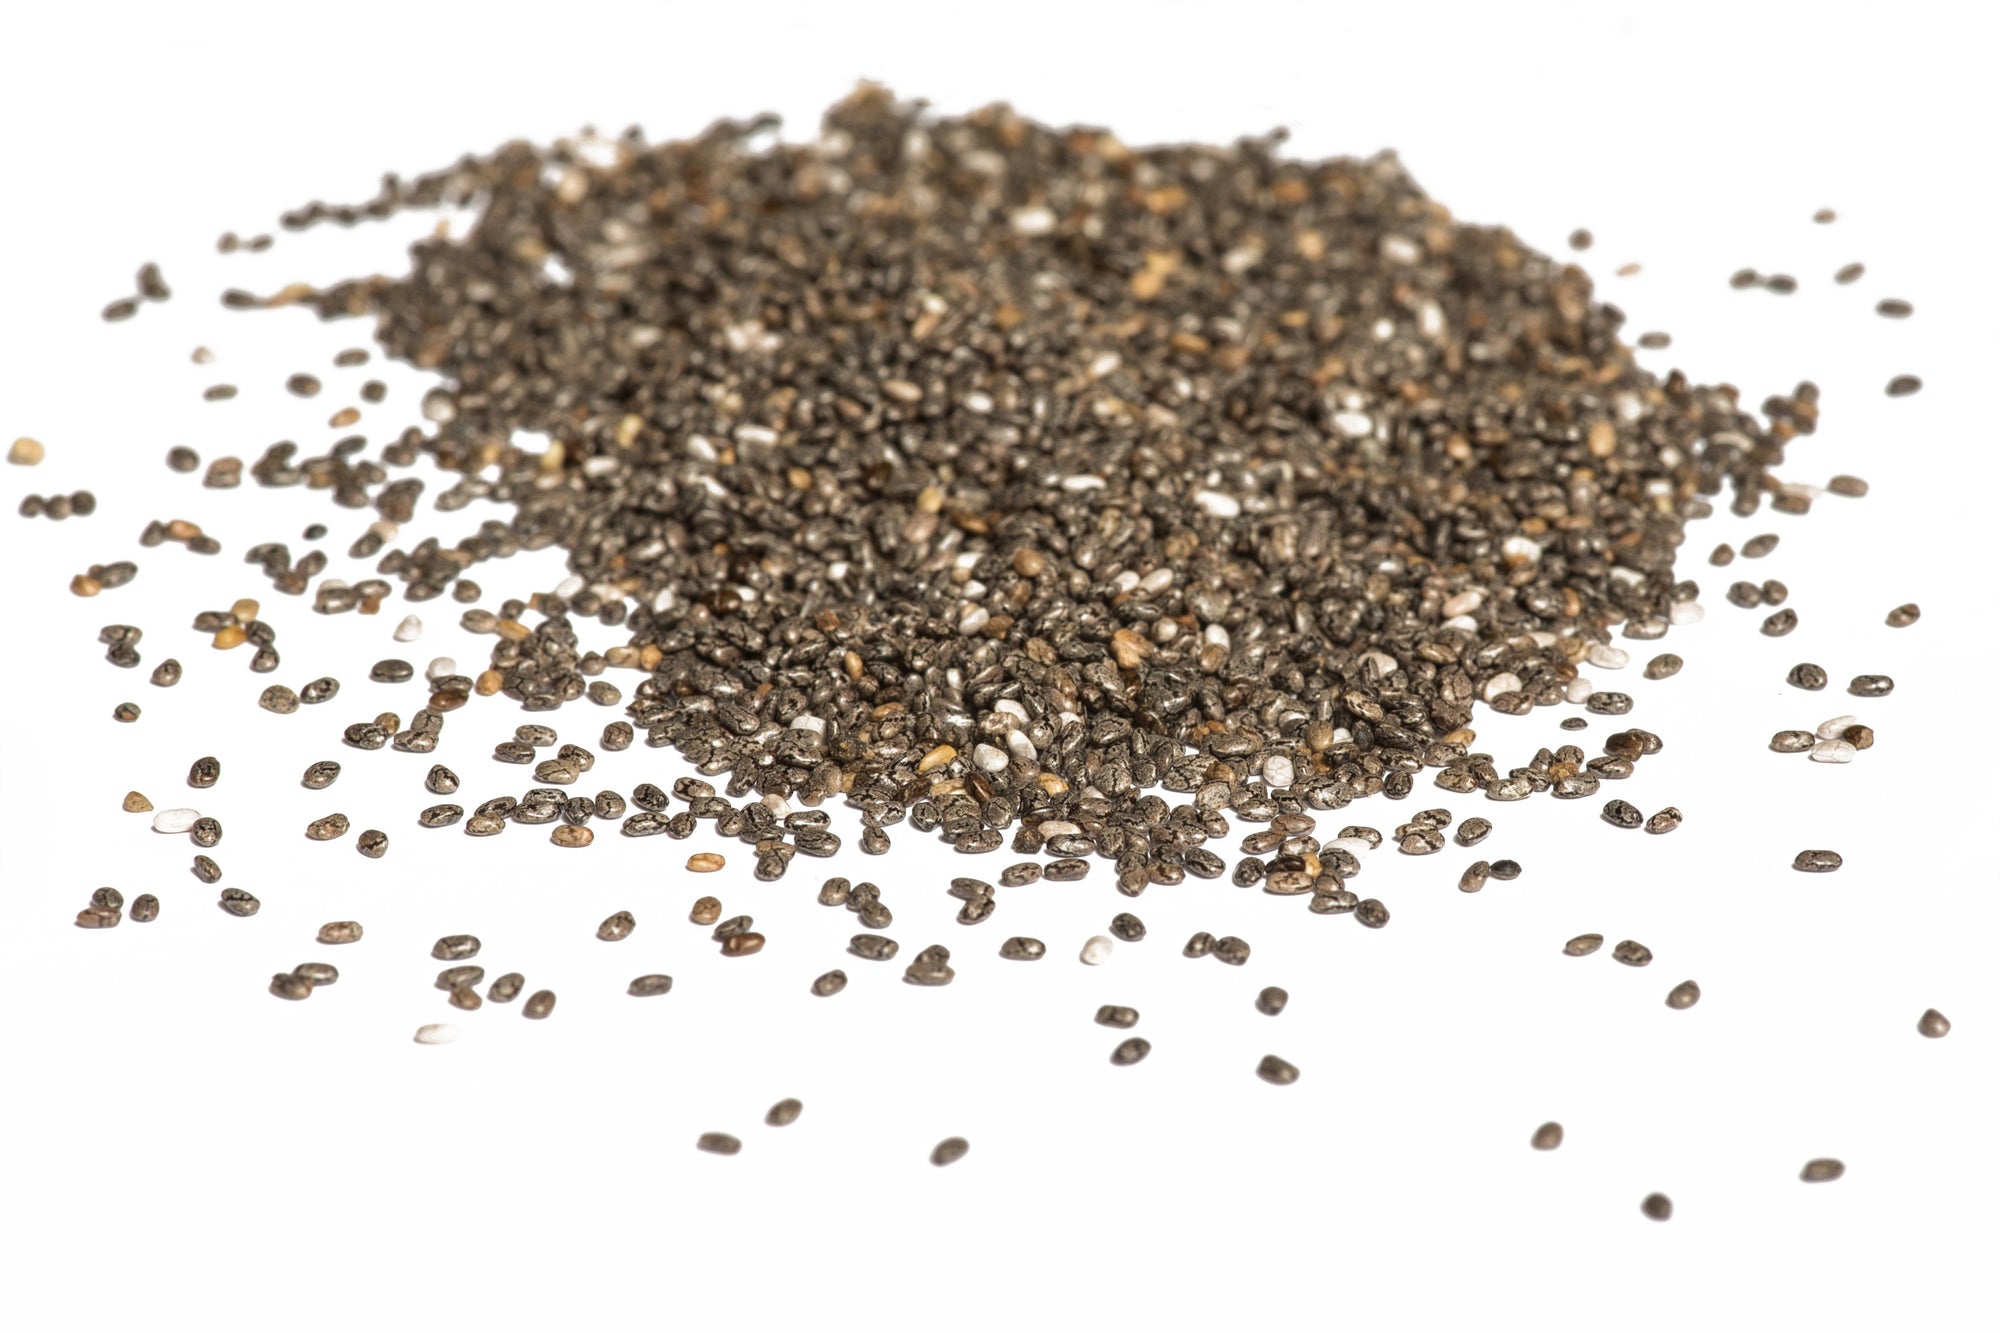 British Chia Seed - Hodmedod's British Pulses & Grains